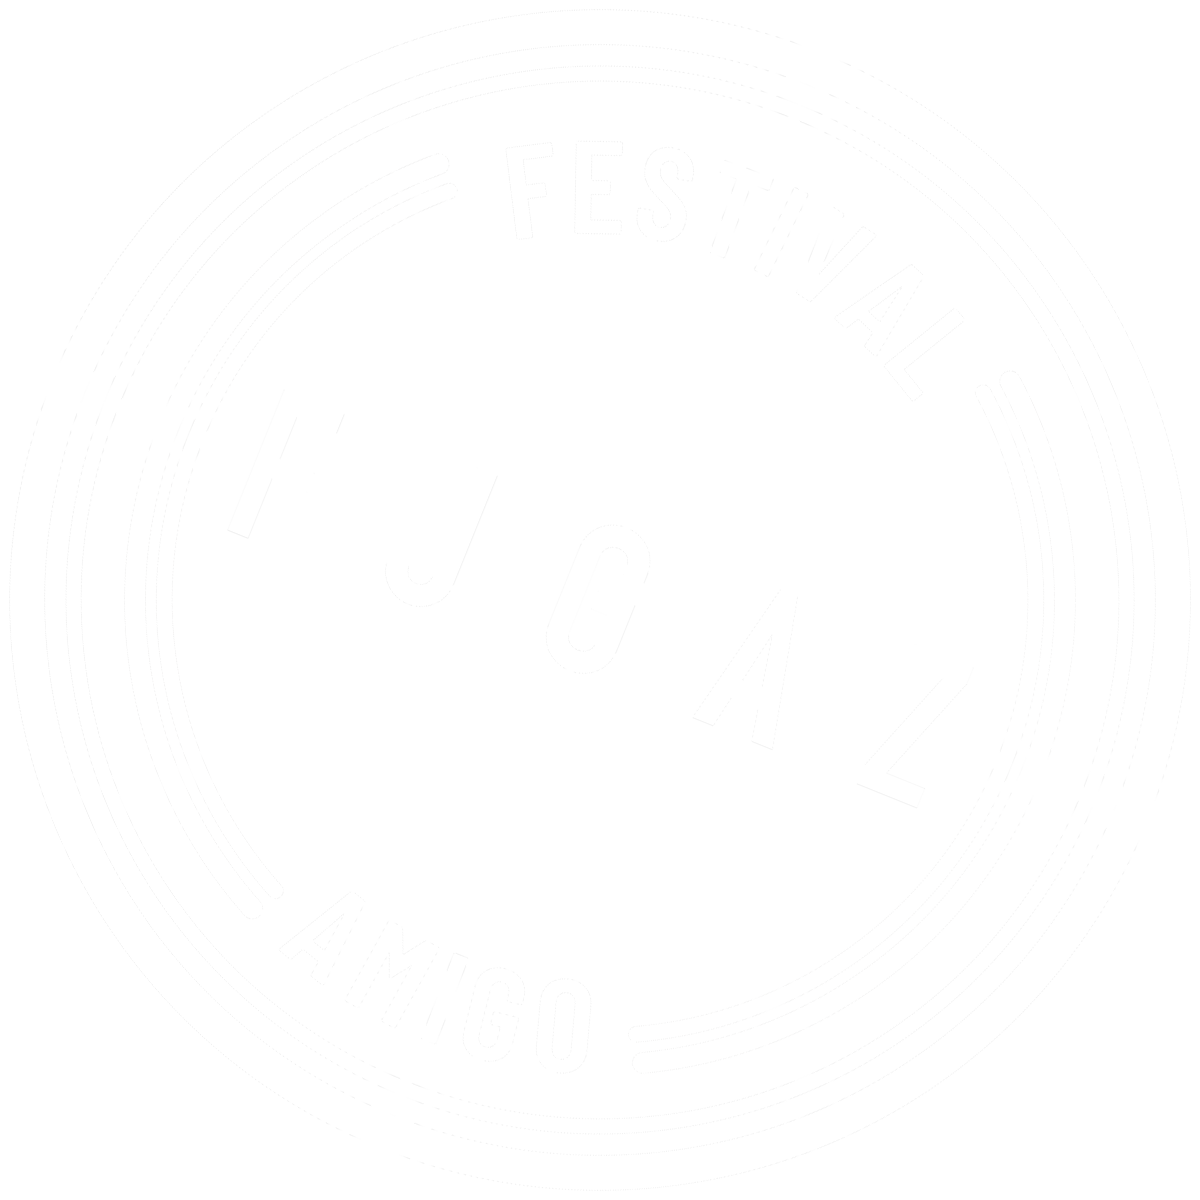 Festival Fugaz